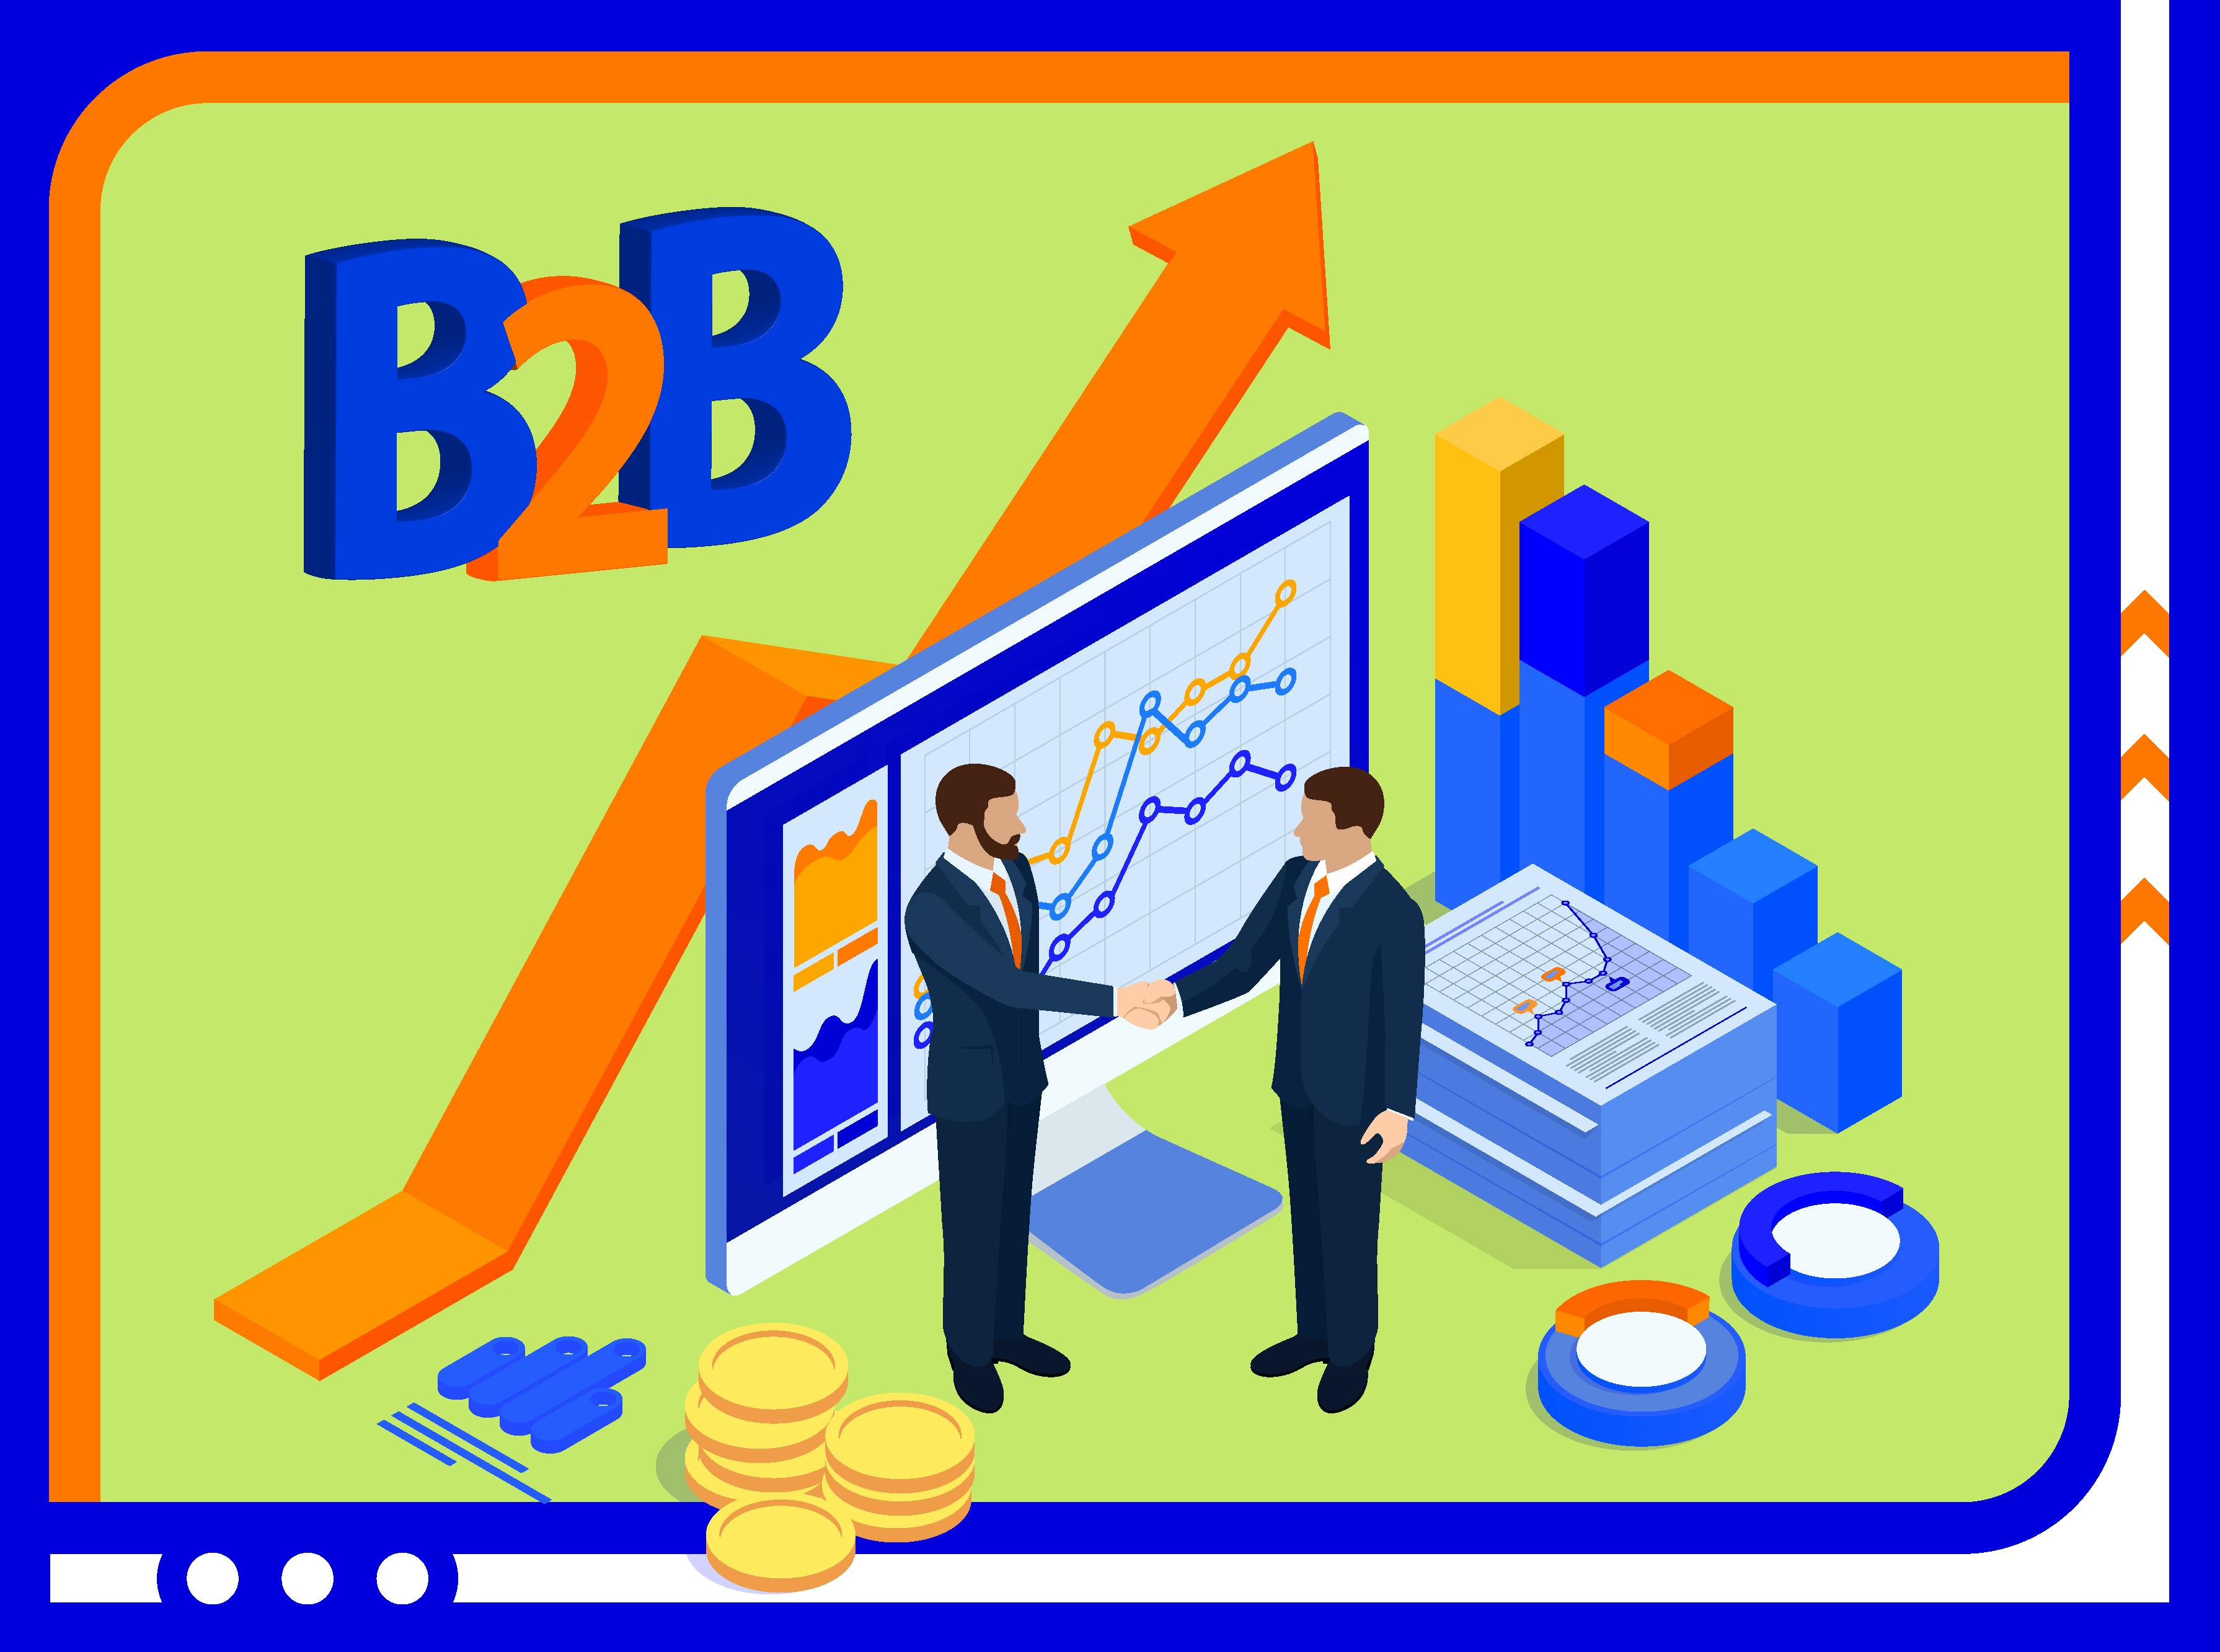 Особливості B2B-продажів: що треба знати для успішного розвитку бізнесу